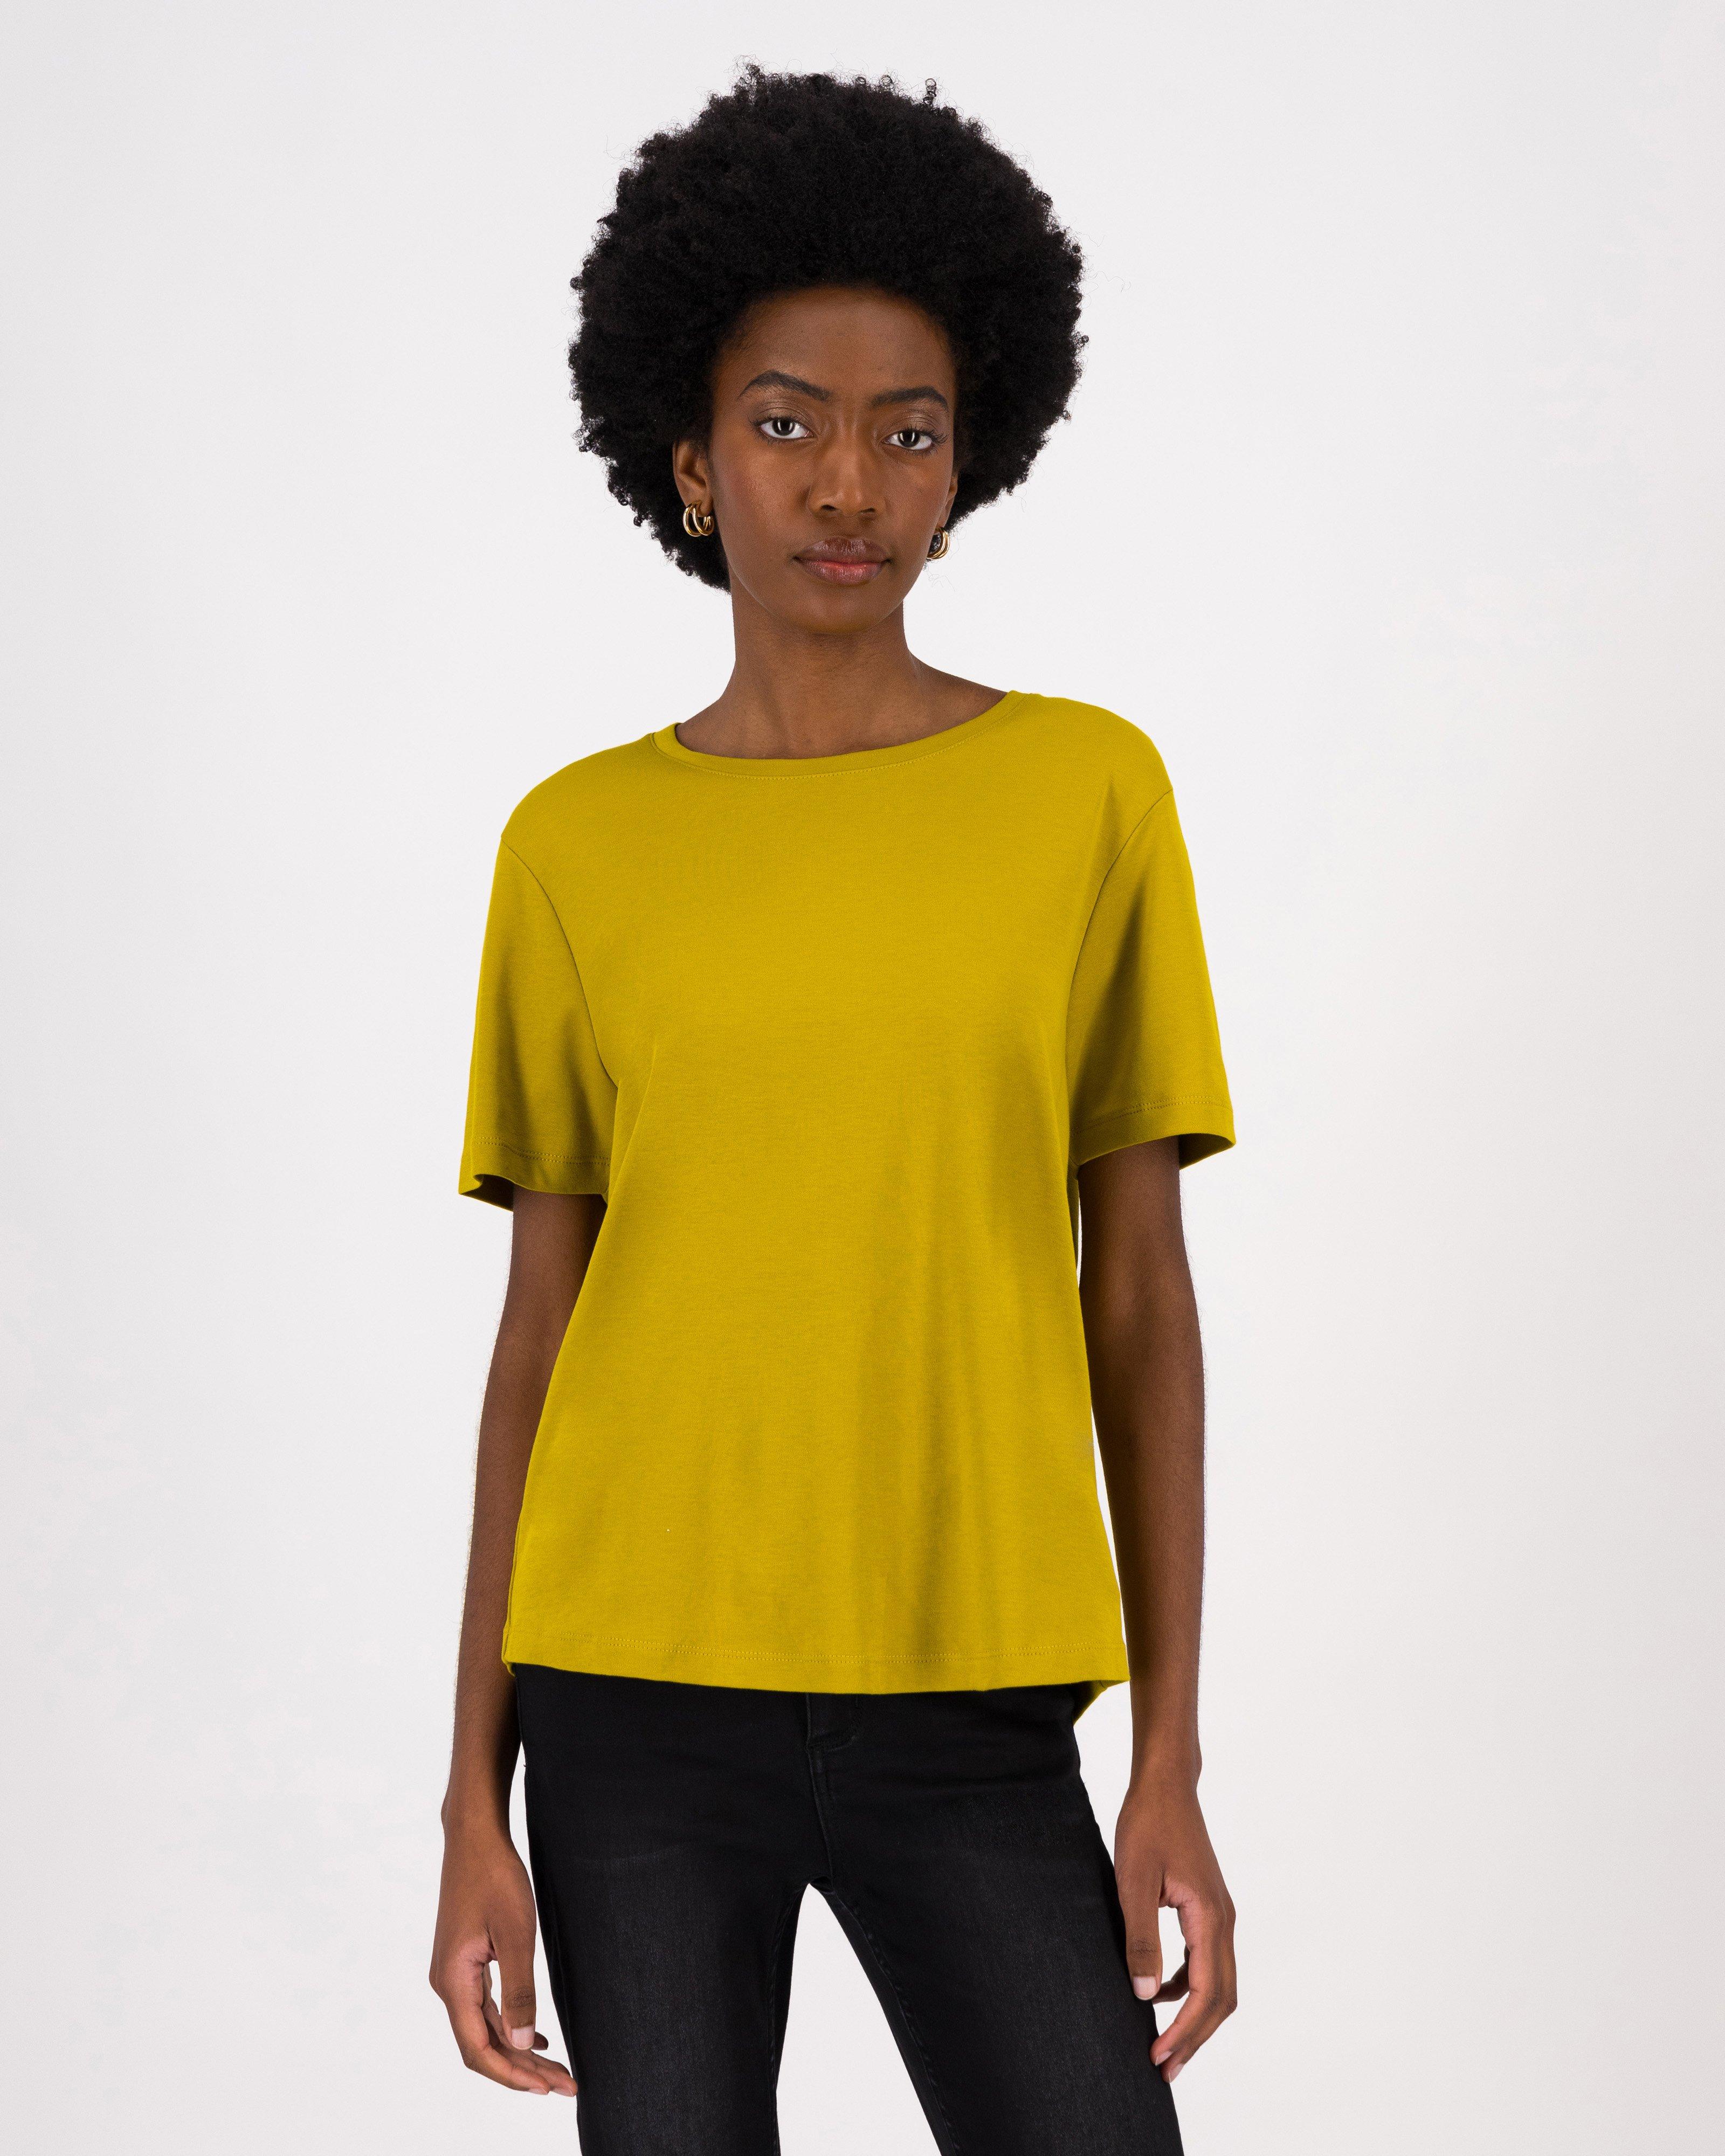 CTEEGC Plain T Shirts for Women,Casual Lightweight Flowy T-Shirt